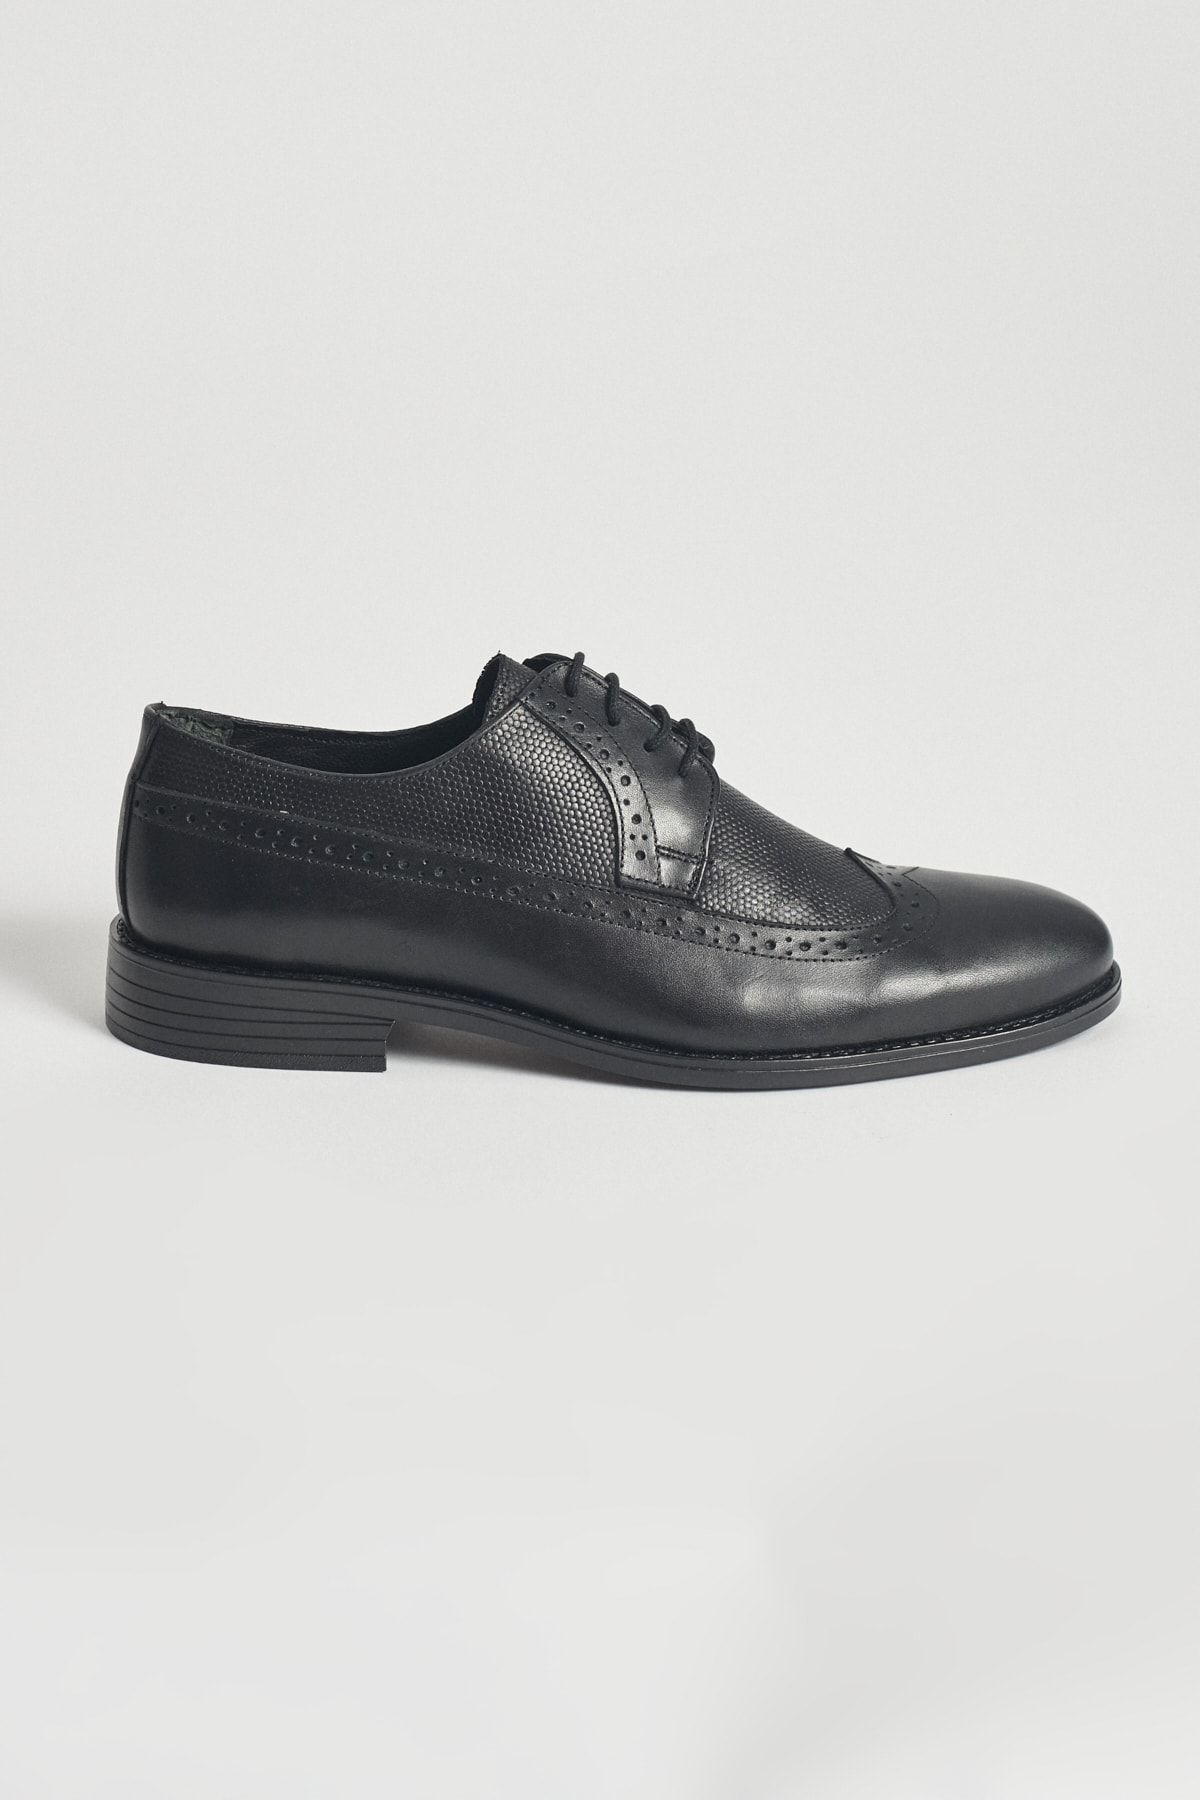 Altınyıldız Classics Erkek Siyah Bağcıklı Rahat Taban Klasik Deri Ayakkabı